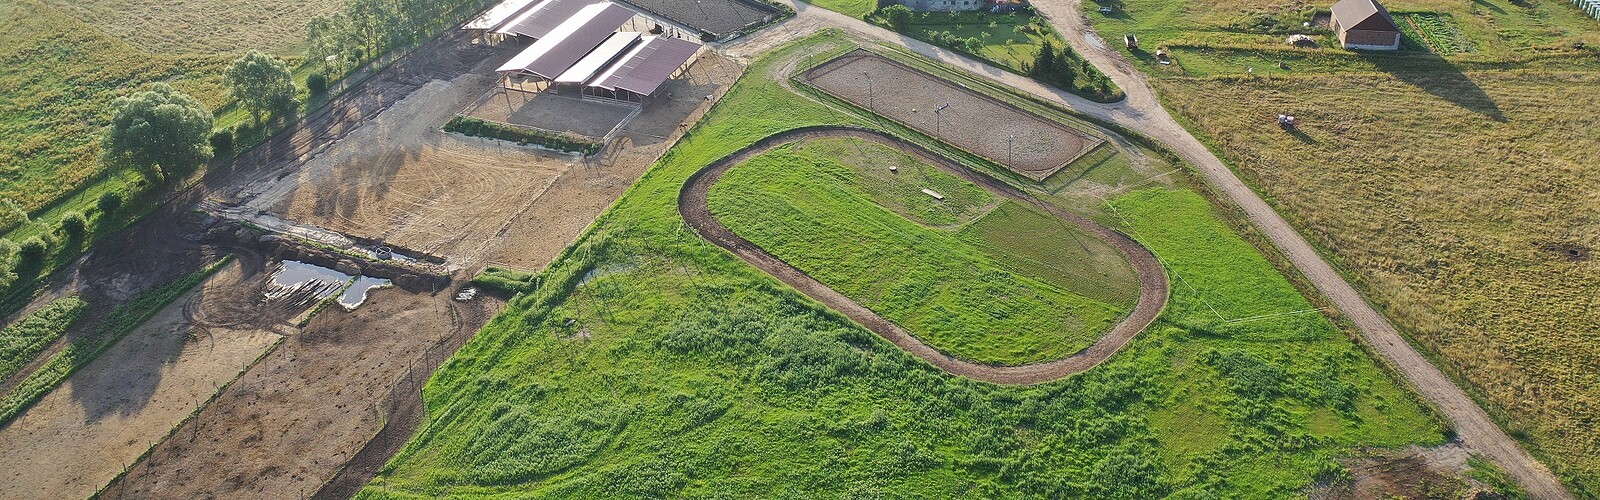 Aerial view of the equestrian farm, Foto: RHGB